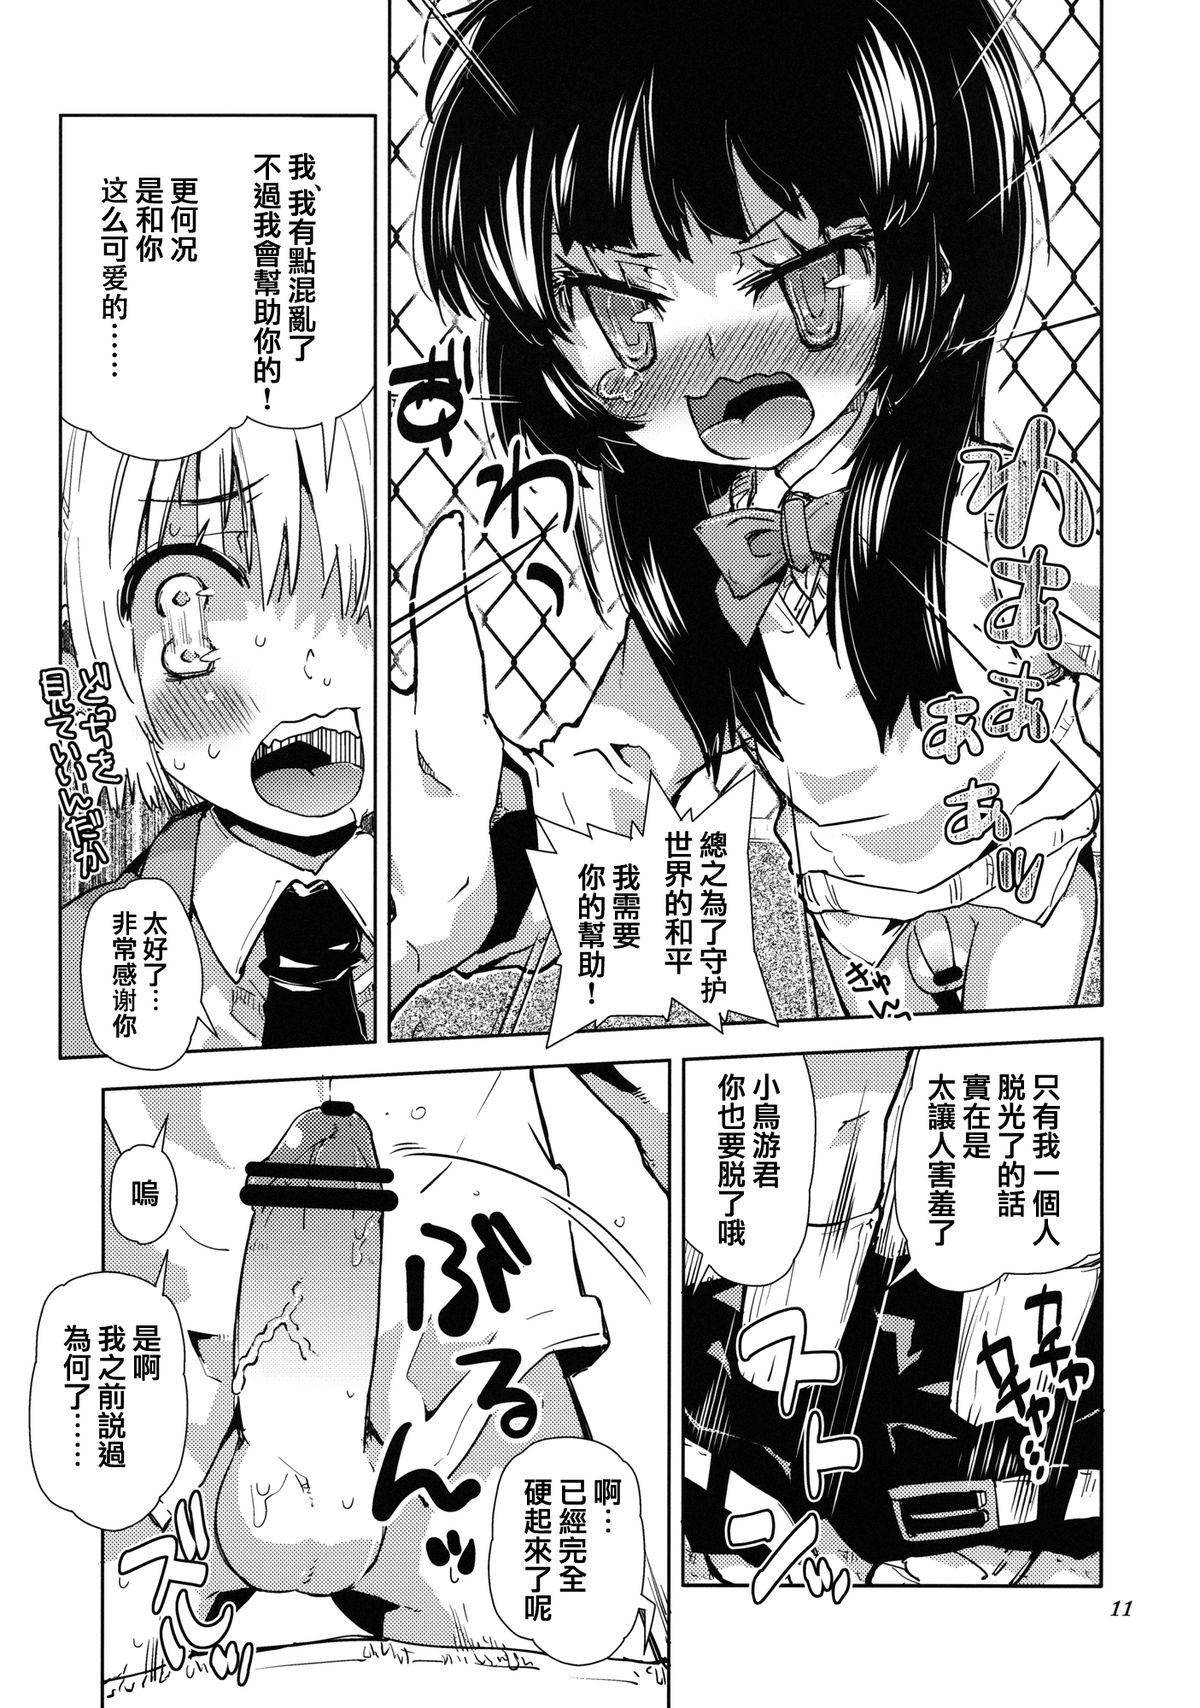 Seduction Porn Sekai ga Dou Toka itsu Chau Otoko no Musume wa Denpa Kawaii. Negra - Page 9